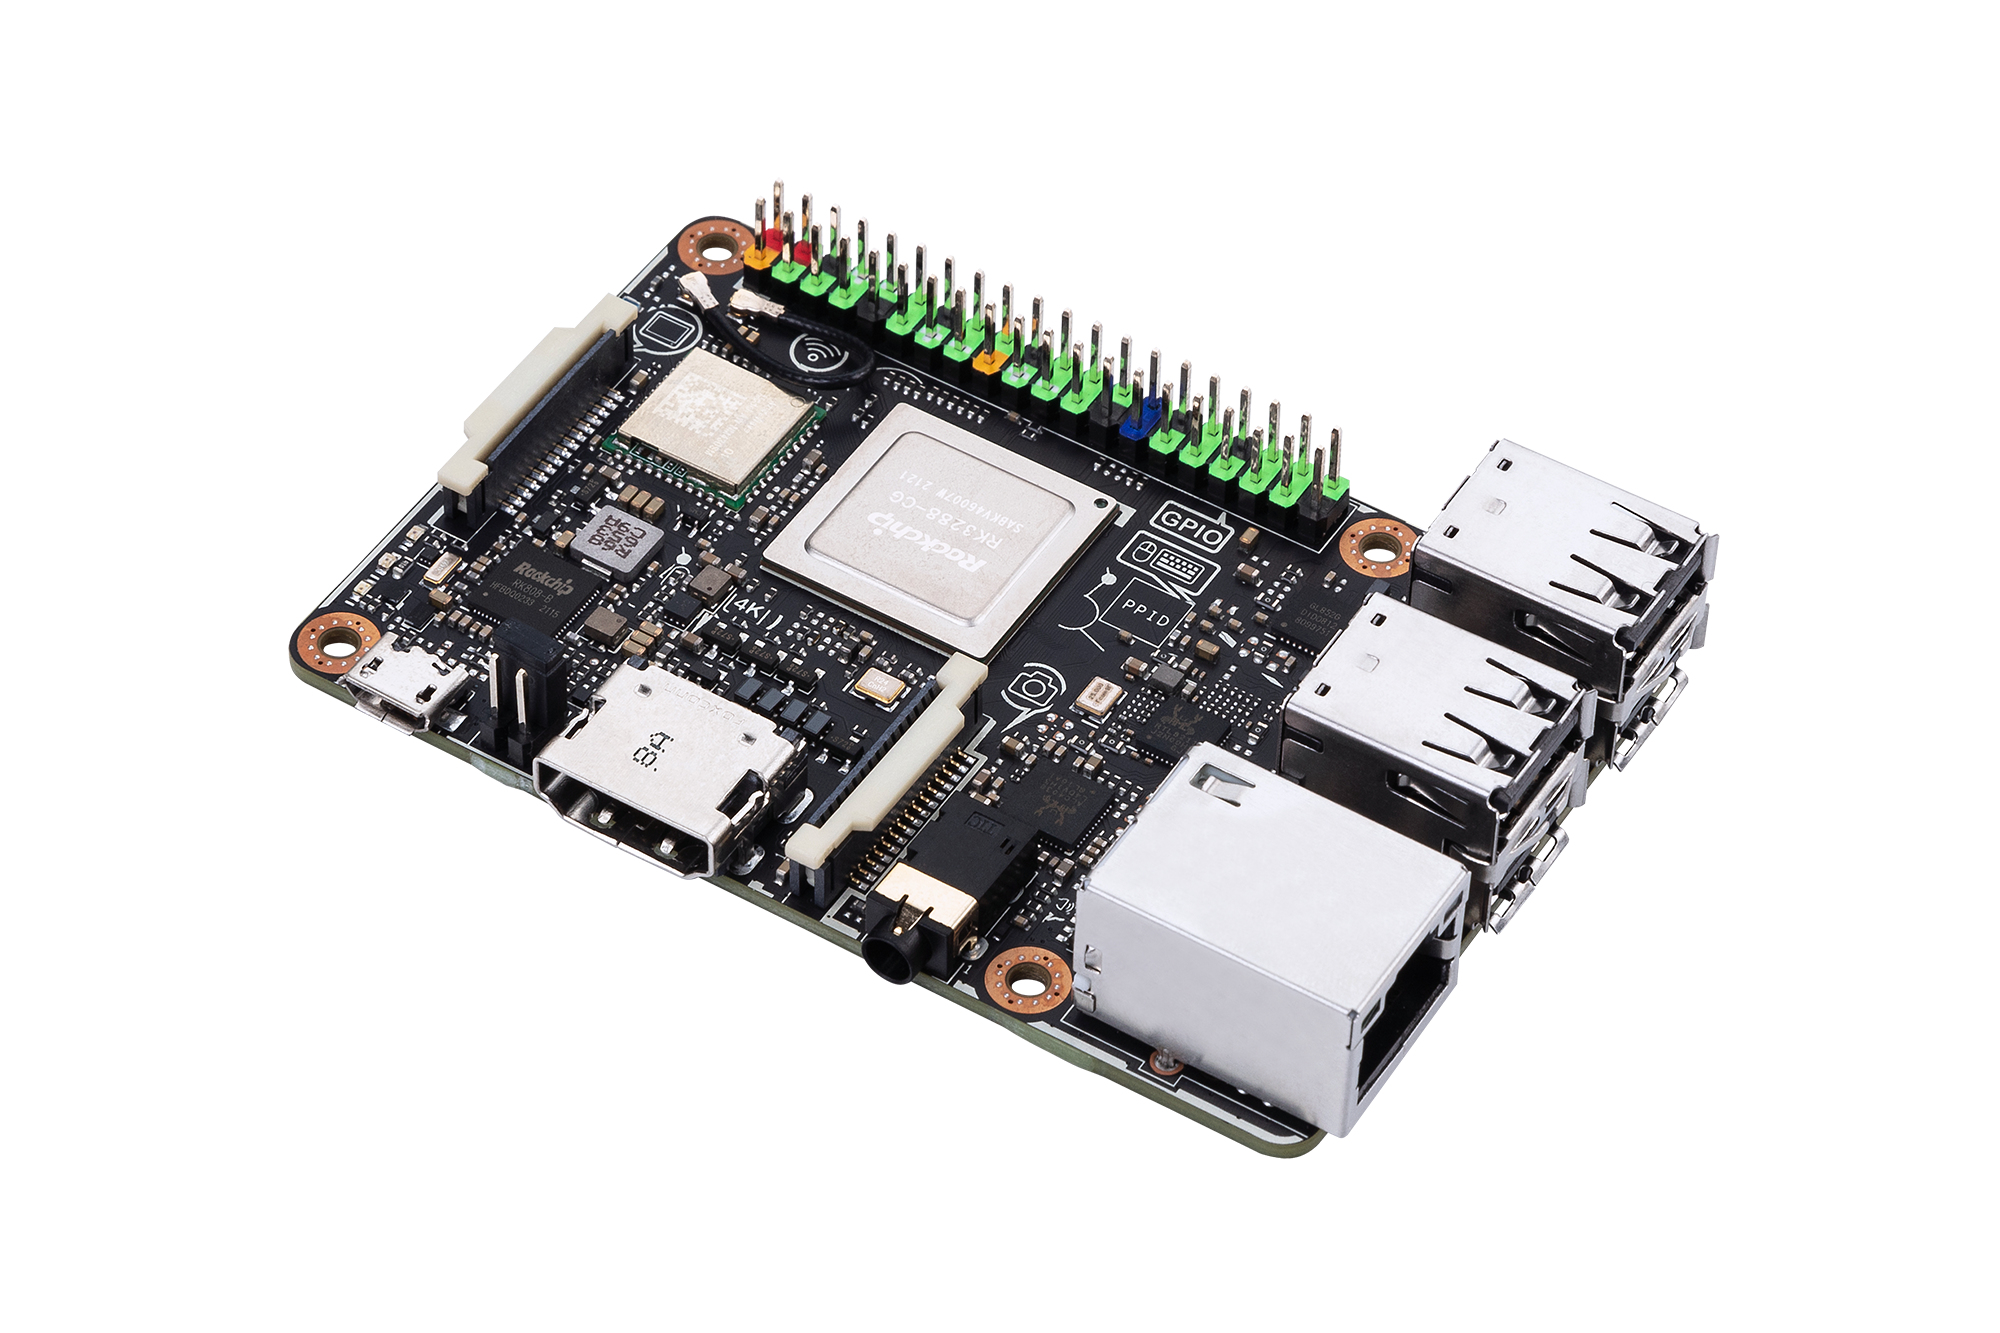 ASUS Tinker Board R2.0 - Einplatinenrechner - Rockchip RK3288-CG.W